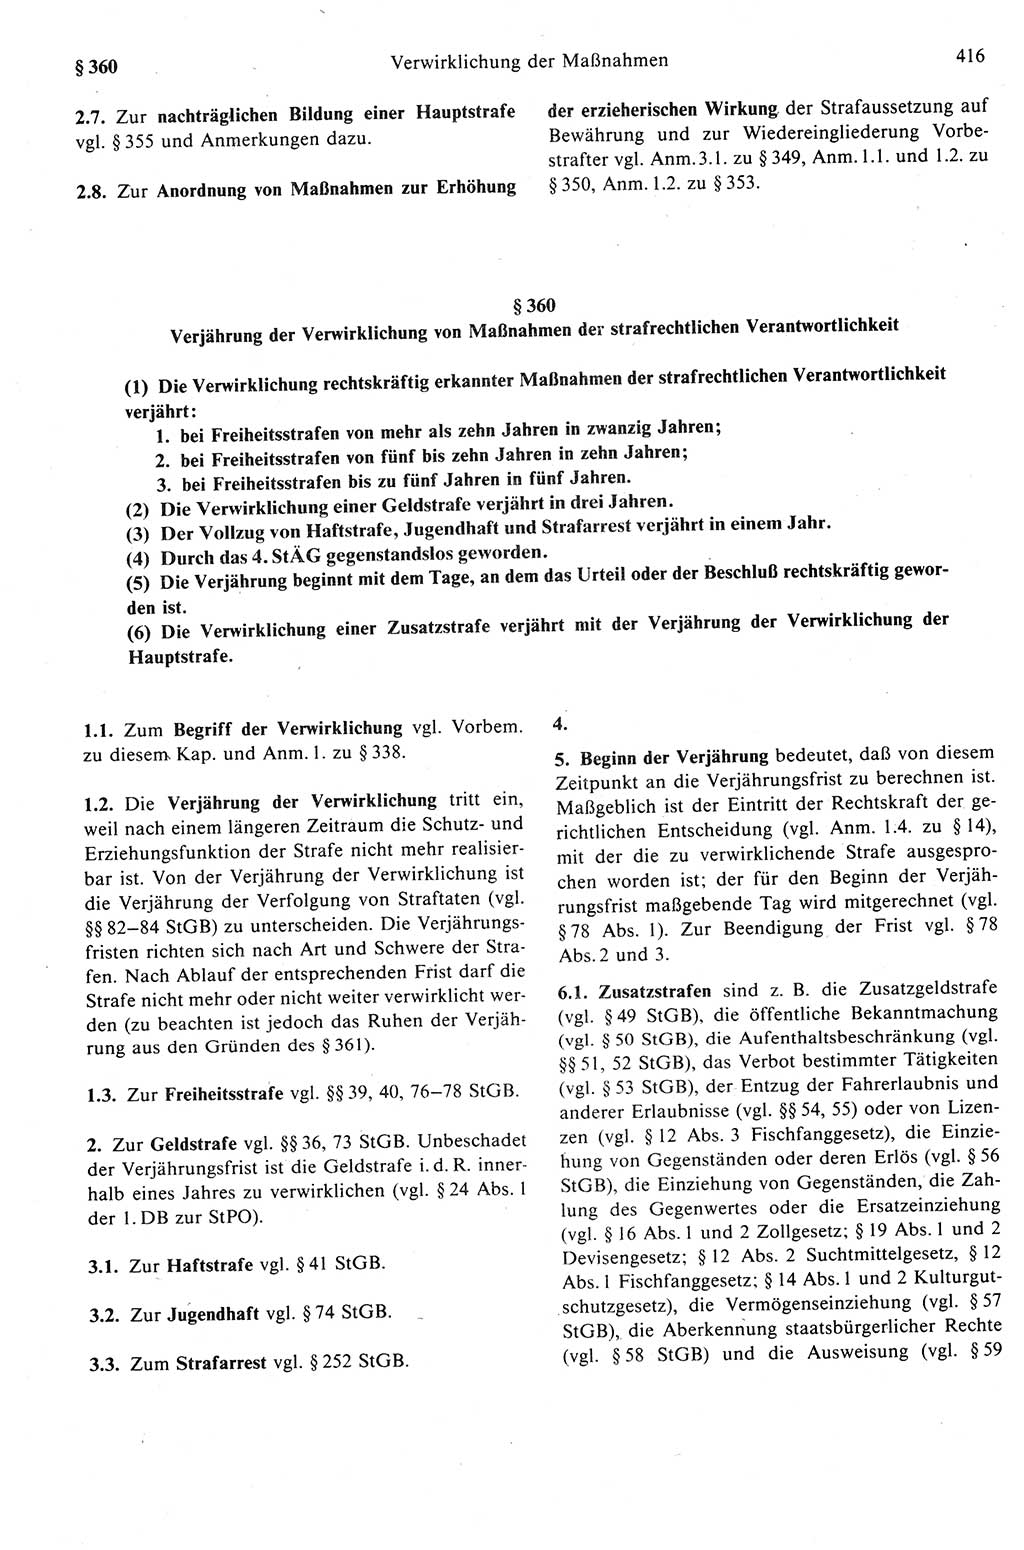 Strafprozeßrecht der DDR (Deutsche Demokratische Republik), Kommentar zur Strafprozeßordnung (StPO) 1989, Seite 416 (Strafprozeßr. DDR Komm. StPO 1989, S. 416)